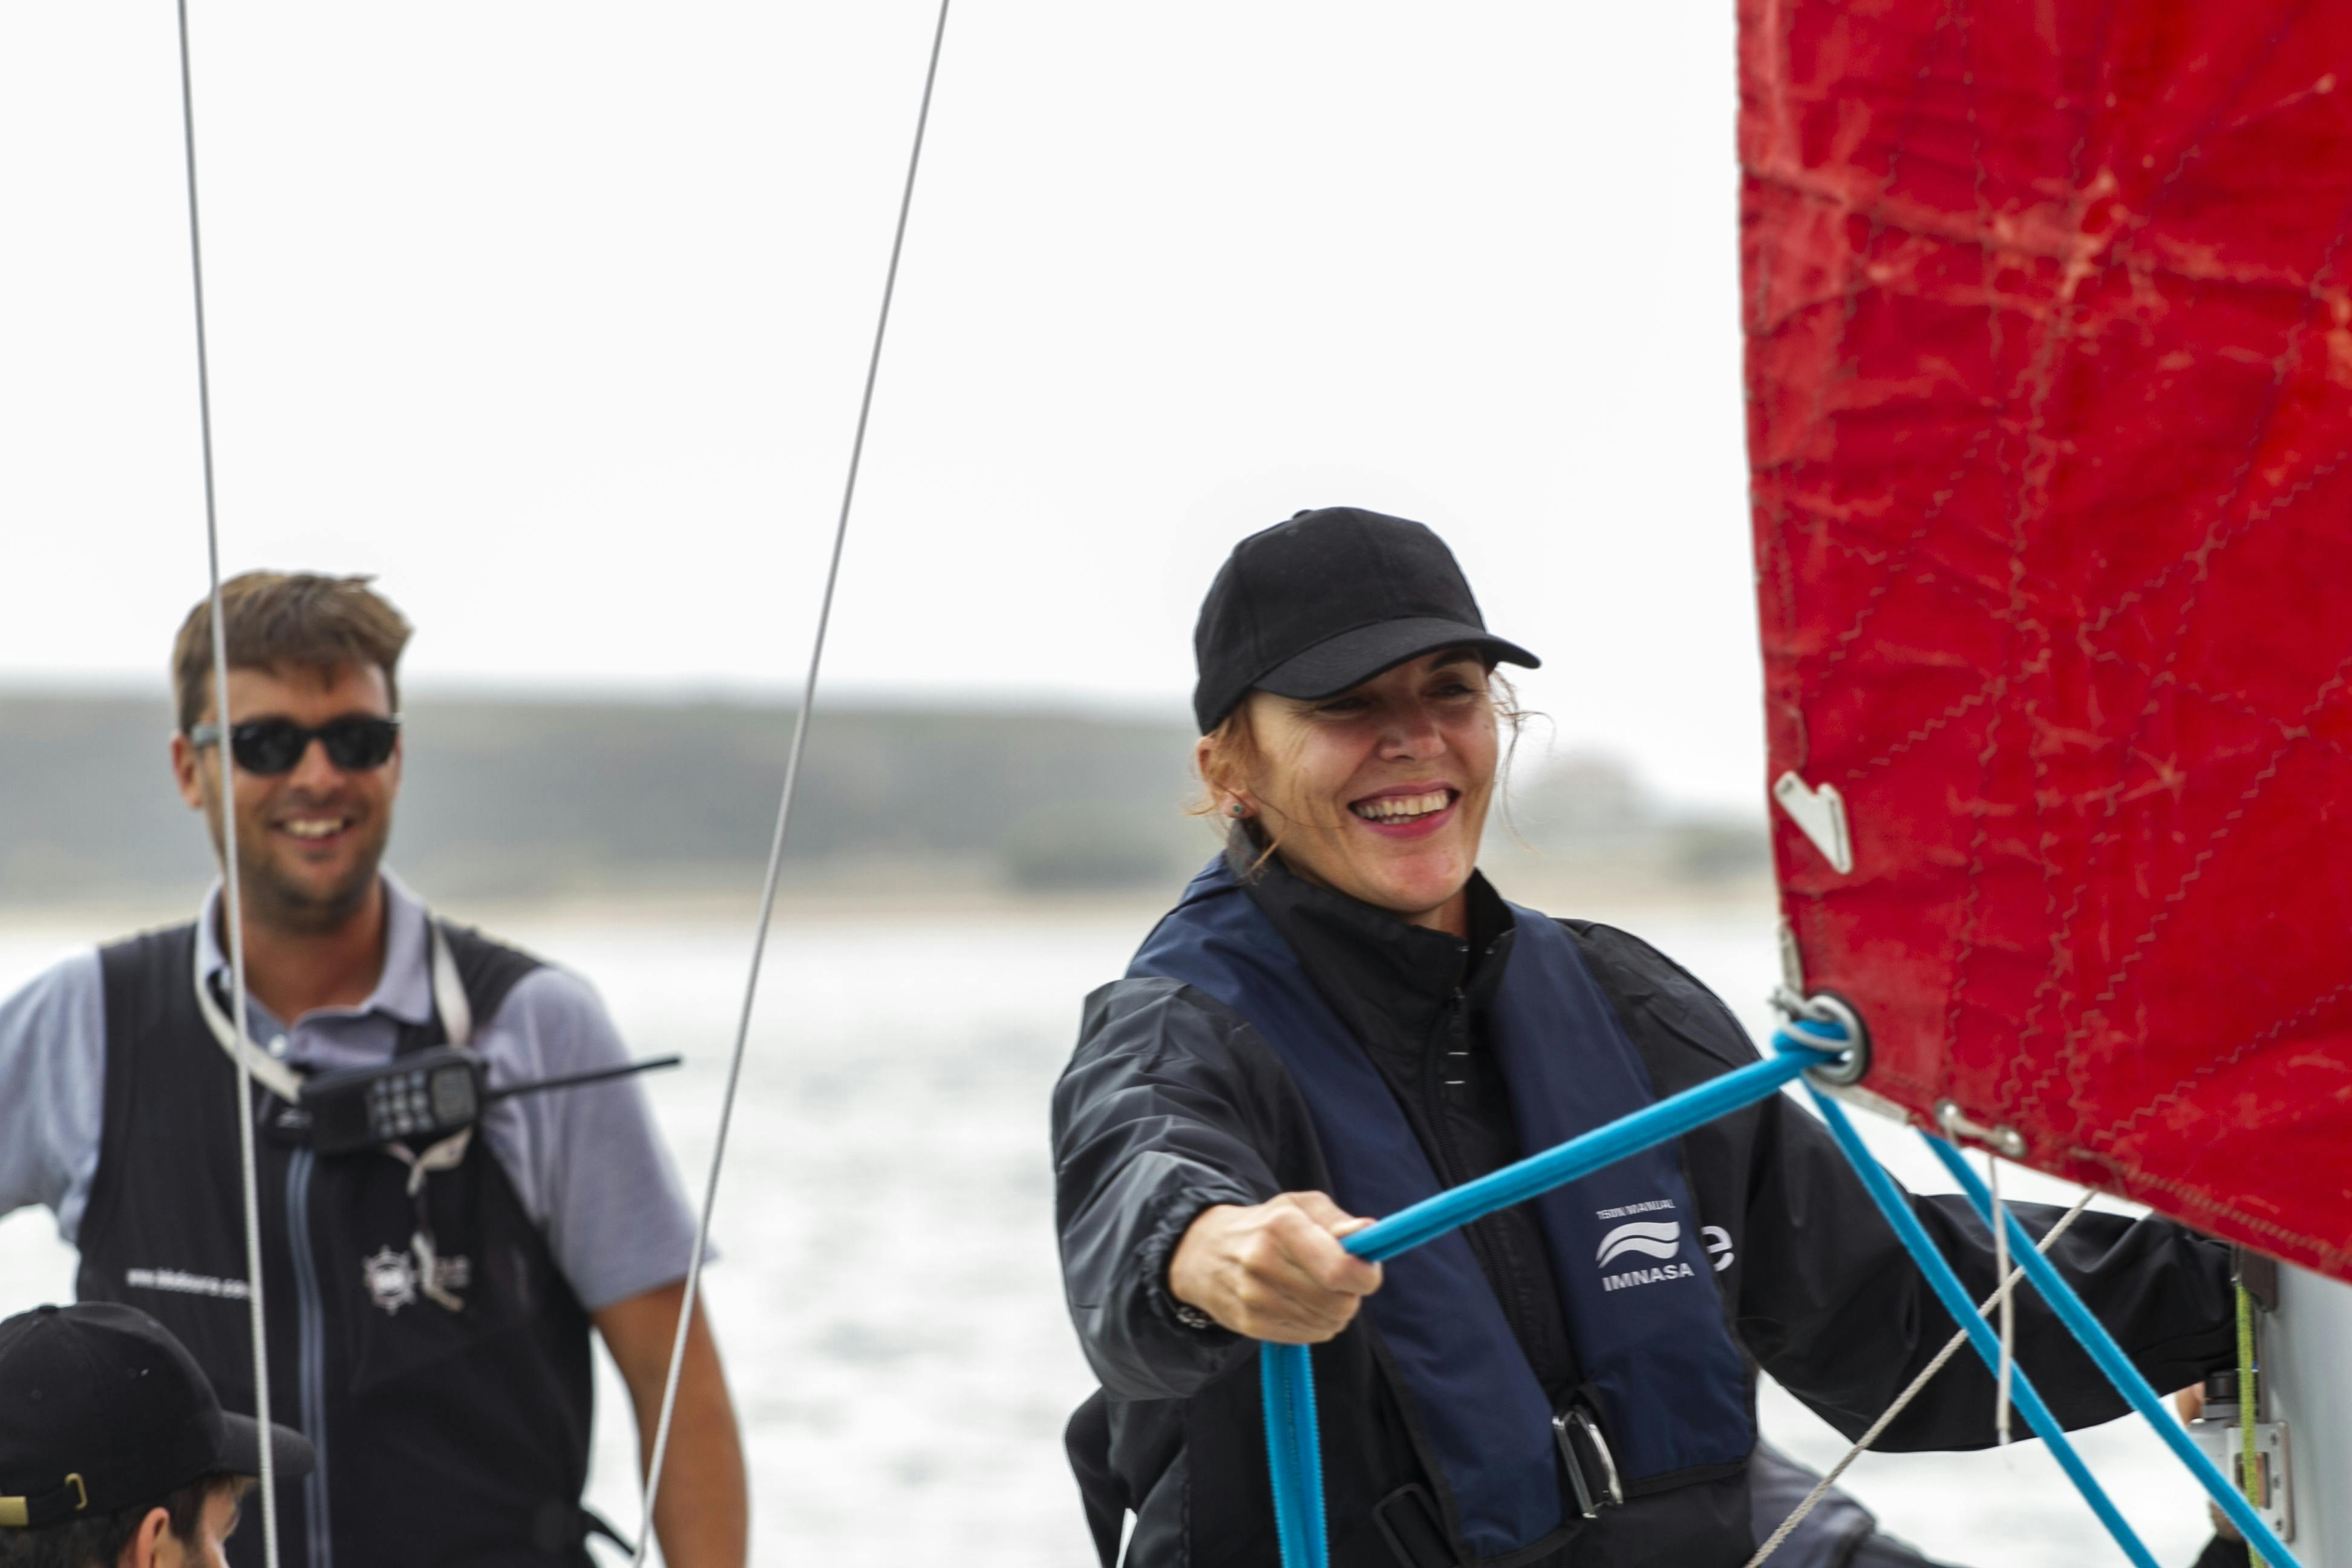 Porto private sailing lesson in a racing boat